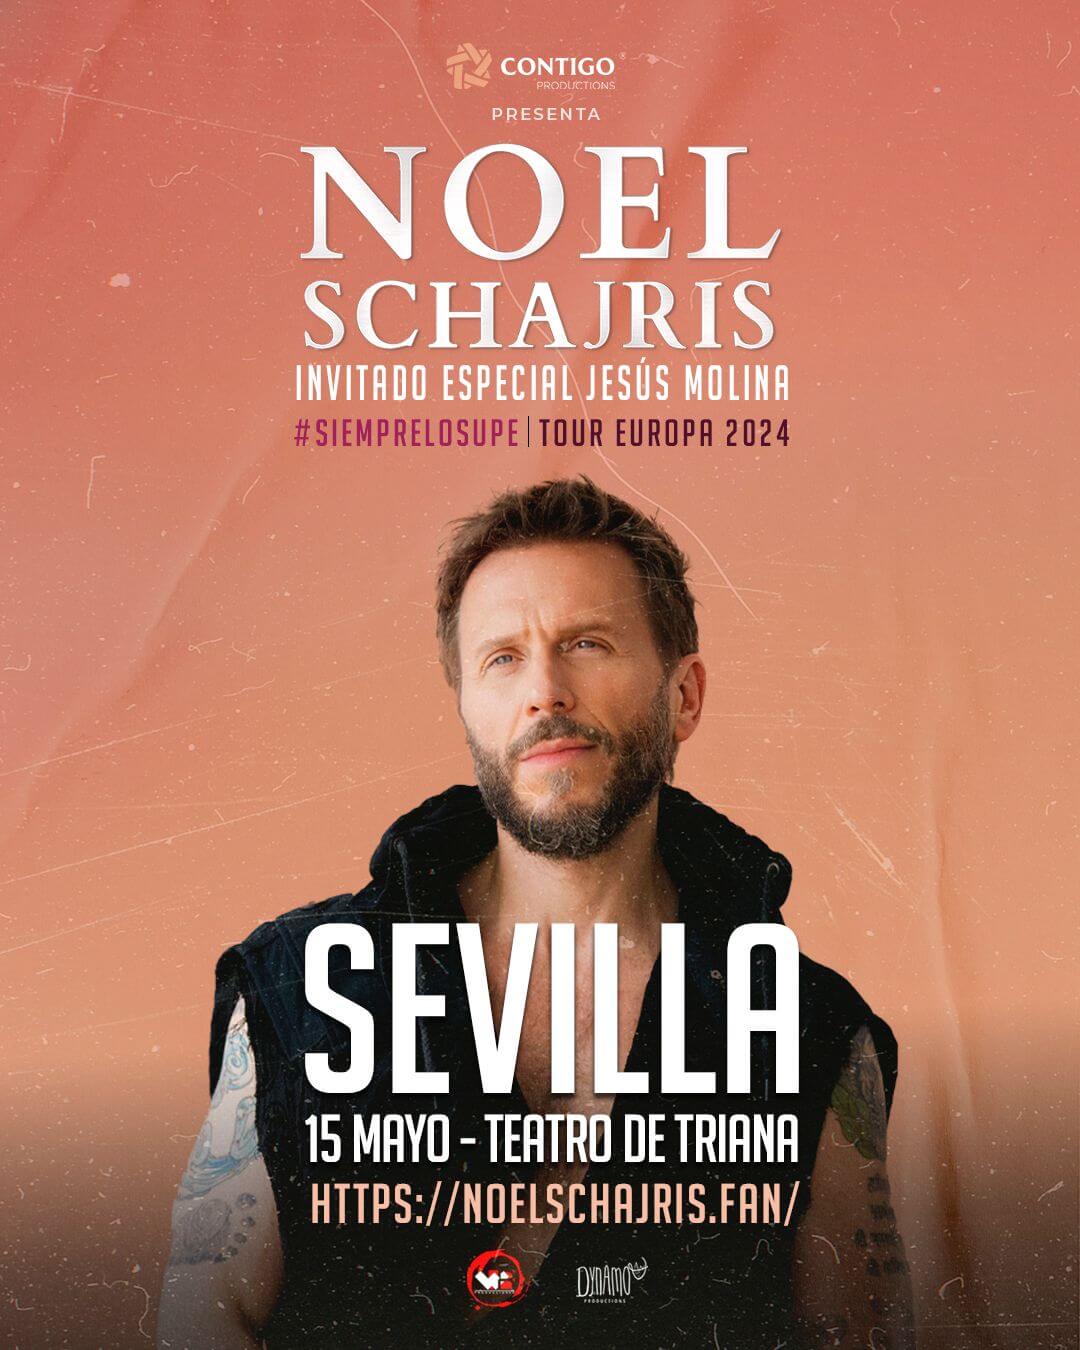 Noel Schajris en Concierto, Sevilla, Mayo 15 2024, compra entradas aquí